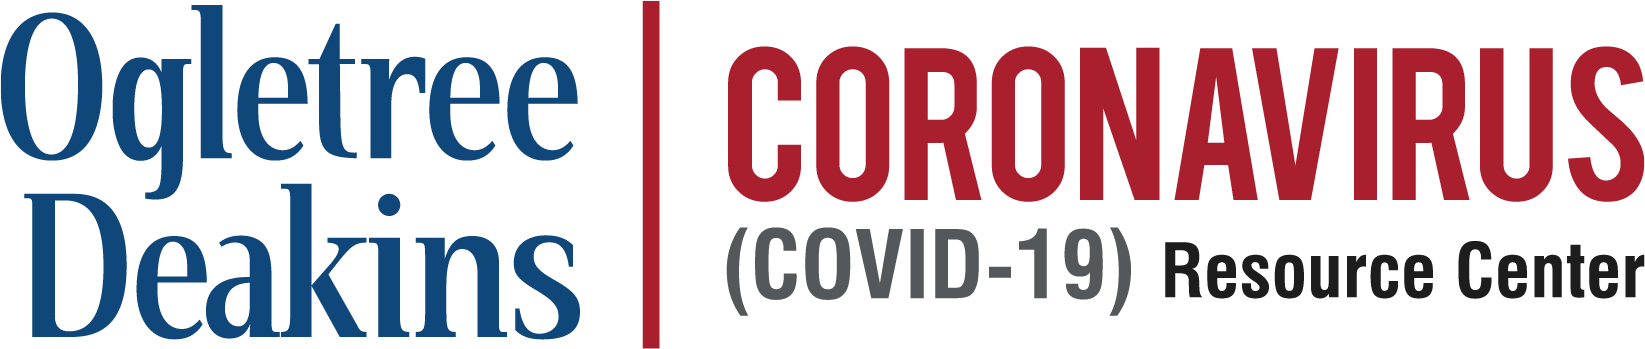 Coronavirus (COVID-19) Resource Center